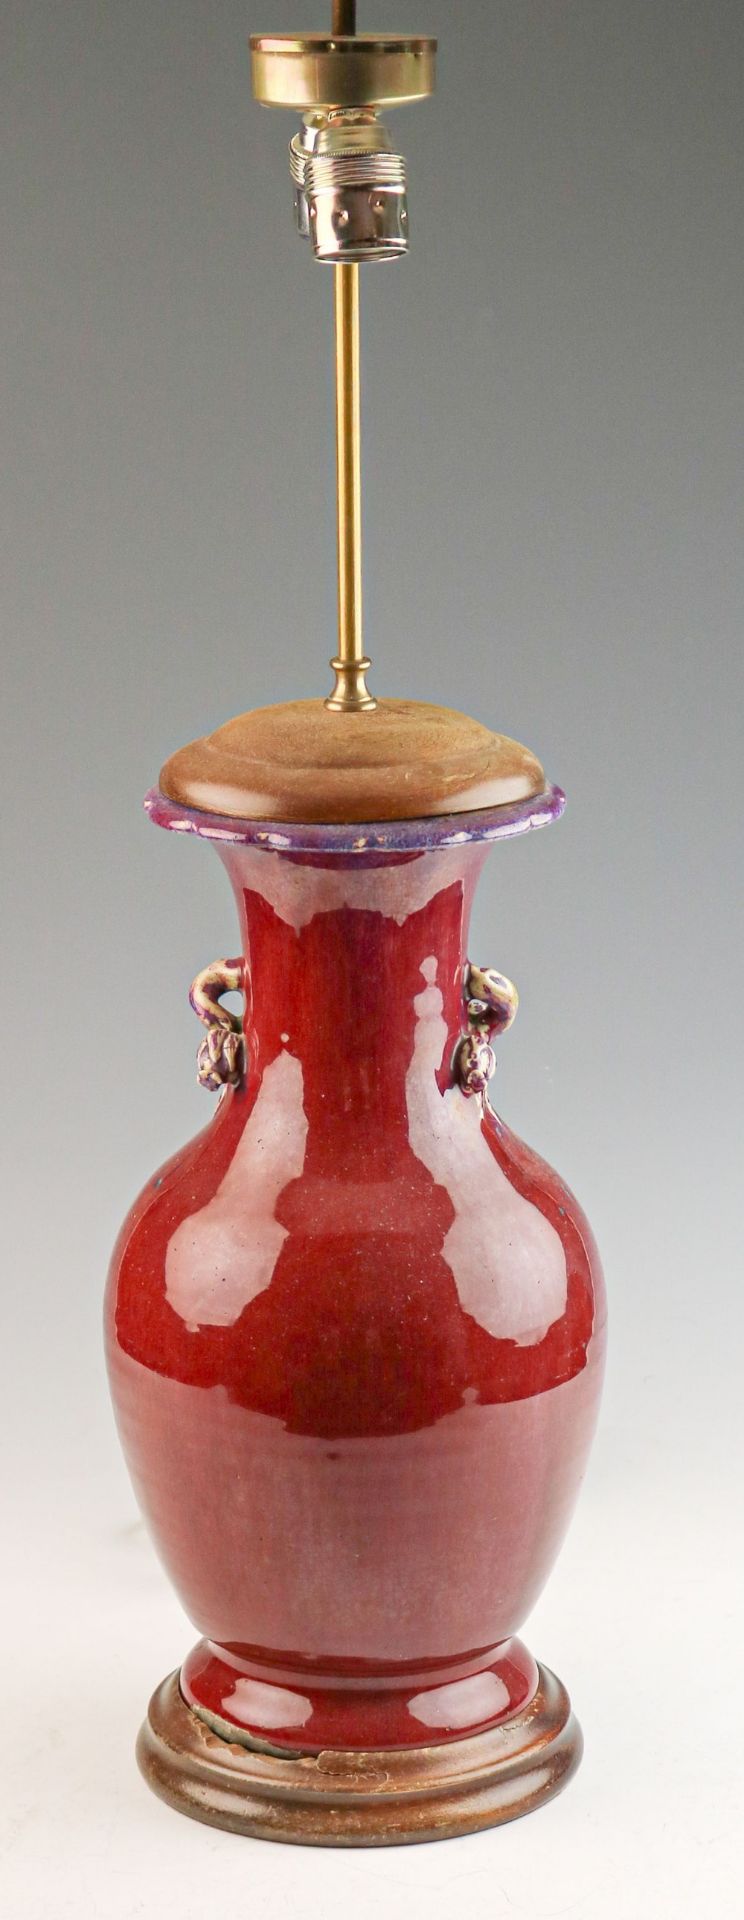 Bauchige Vase, als Lampe montiert China